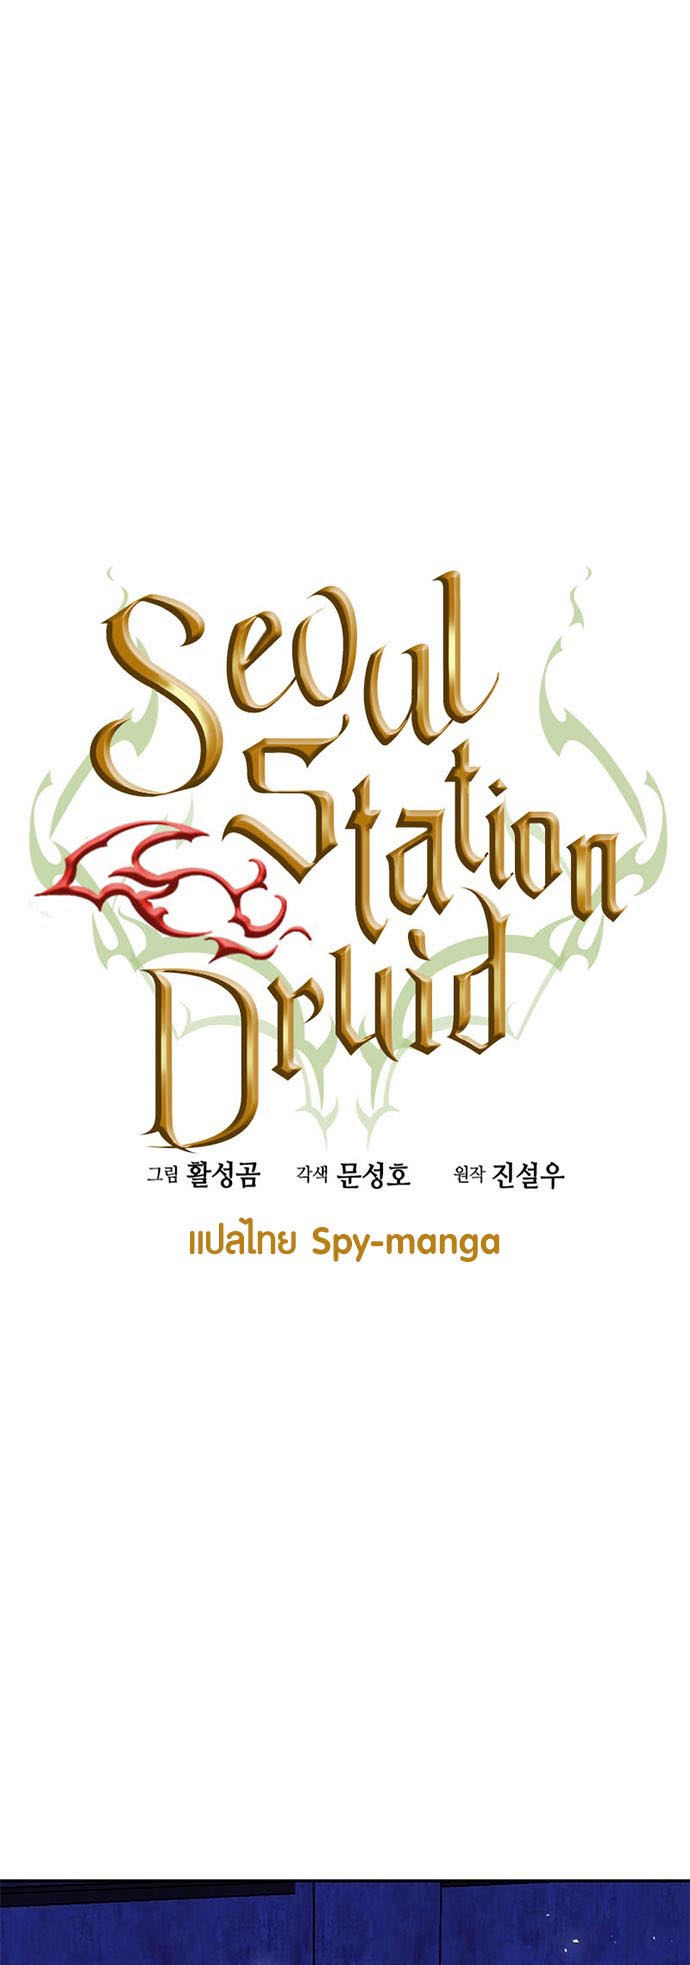 อ่านมันฮวา เรื่อง Seoul Station Druid 112 18